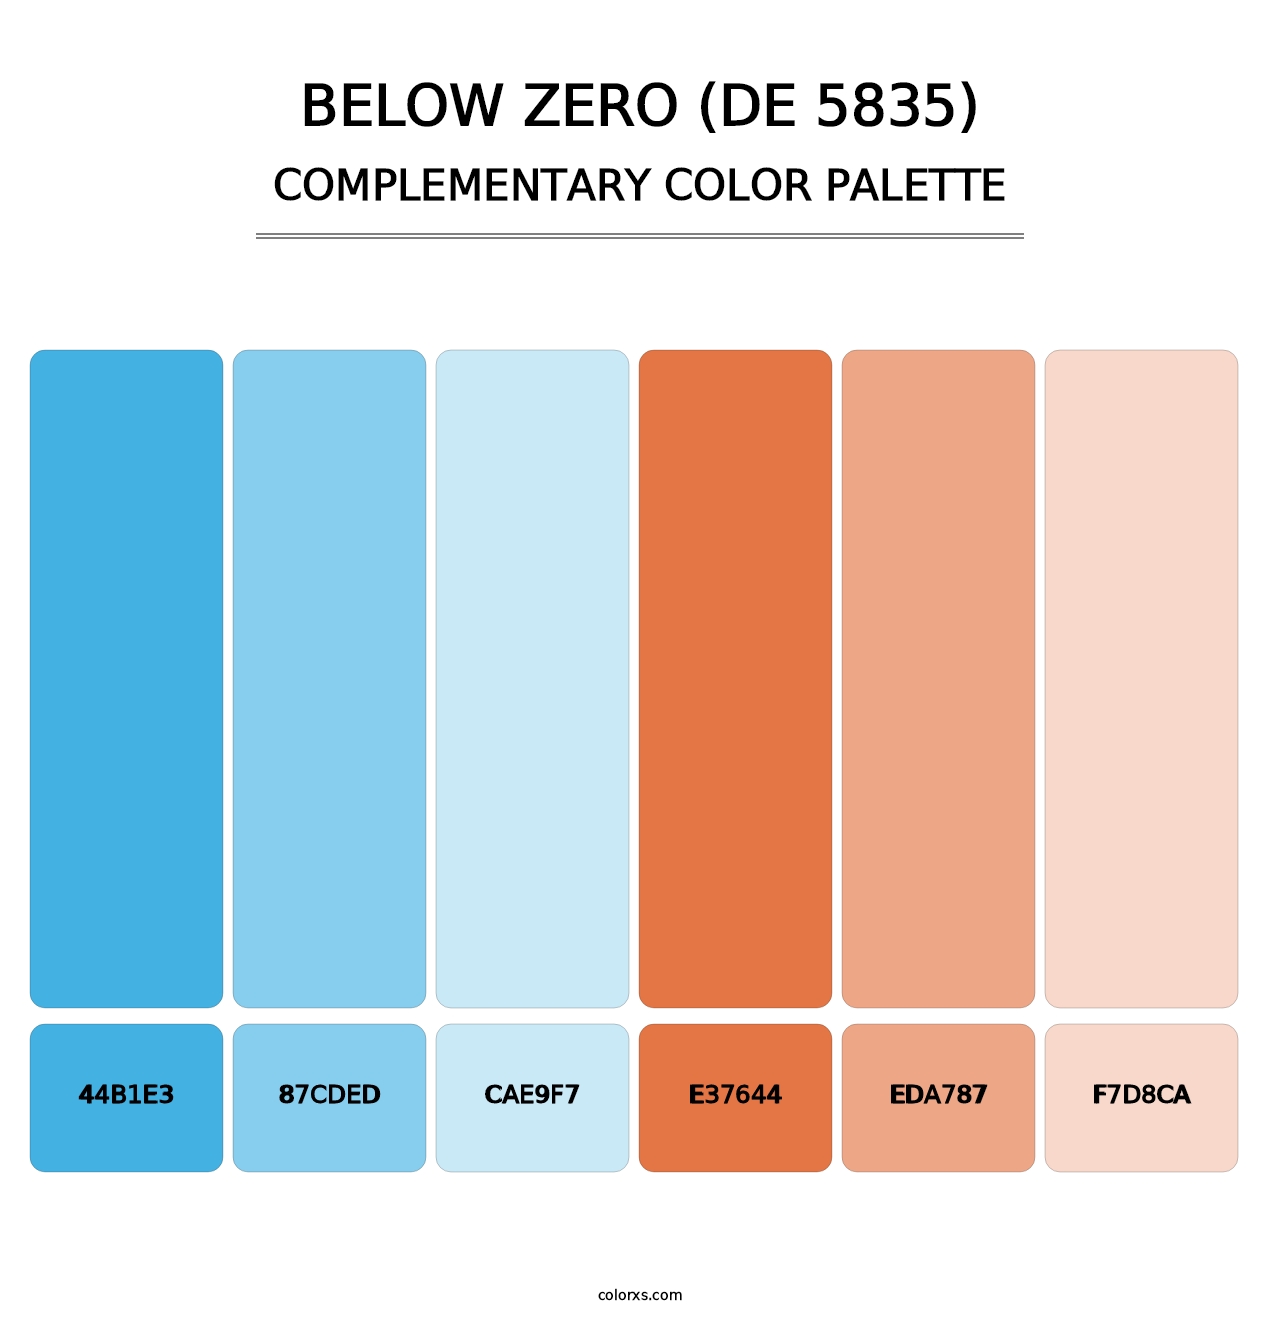 Below Zero (DE 5835) - Complementary Color Palette